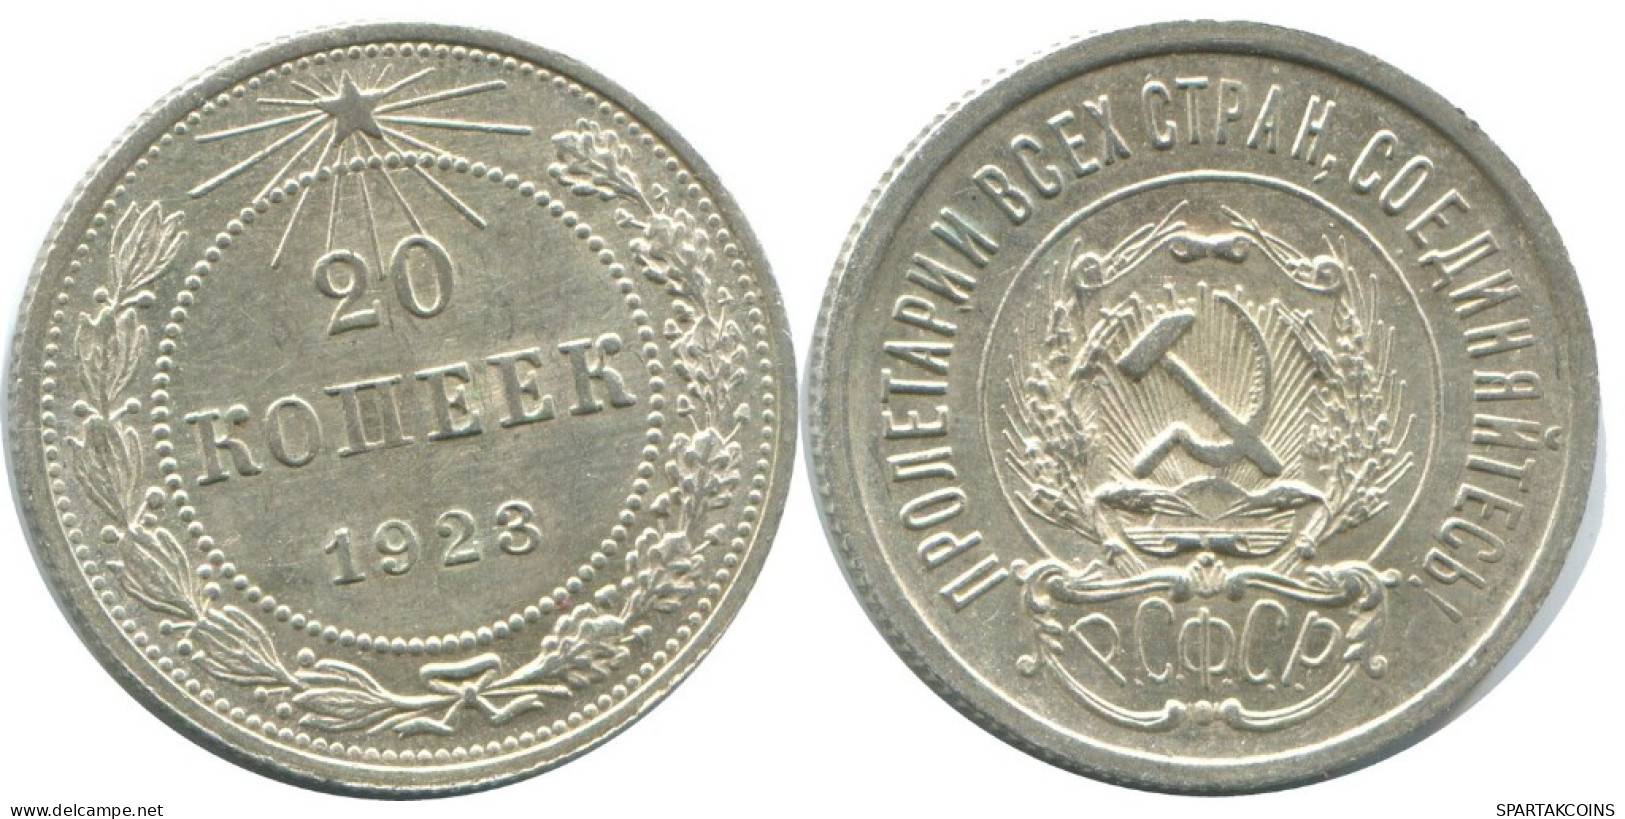 20 KOPEKS 1923 RUSSLAND RUSSIA RSFSR SILBER Münze HIGH GRADE #AF699.D.A - Russia